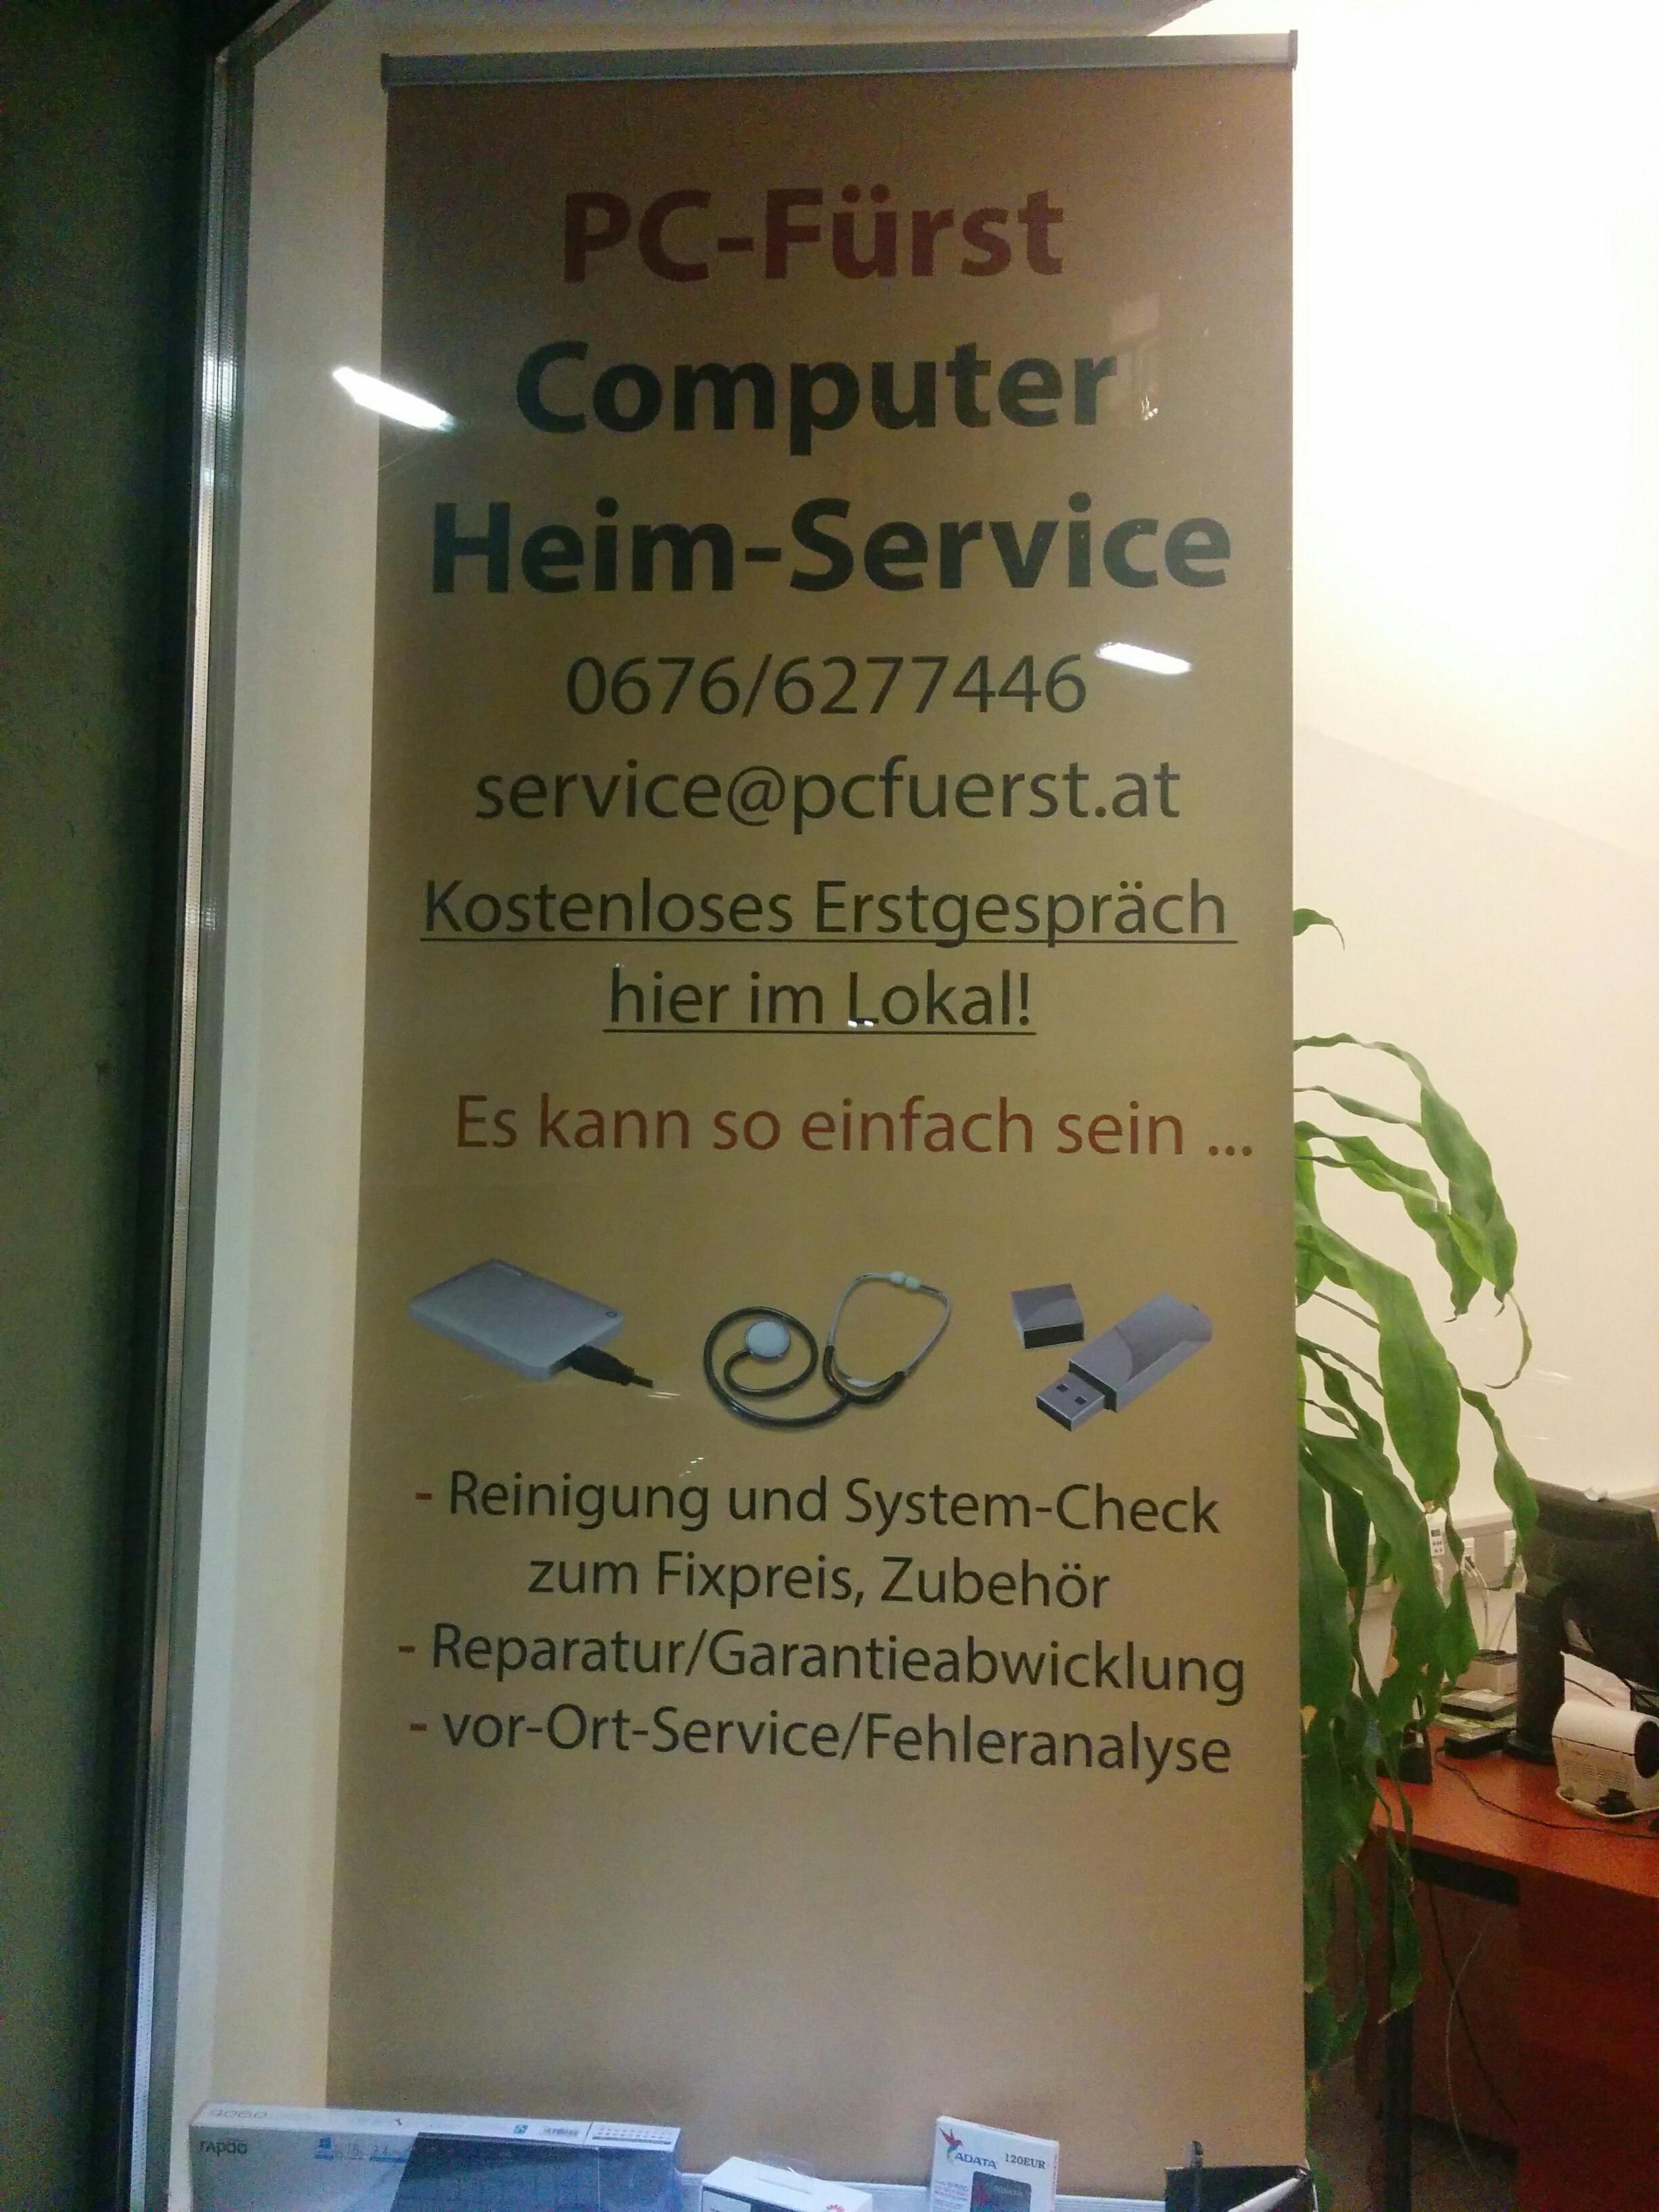 PCFürst - Computer Heim-Service, Taborstraße 76a Stiege 1/2-3 in Wien